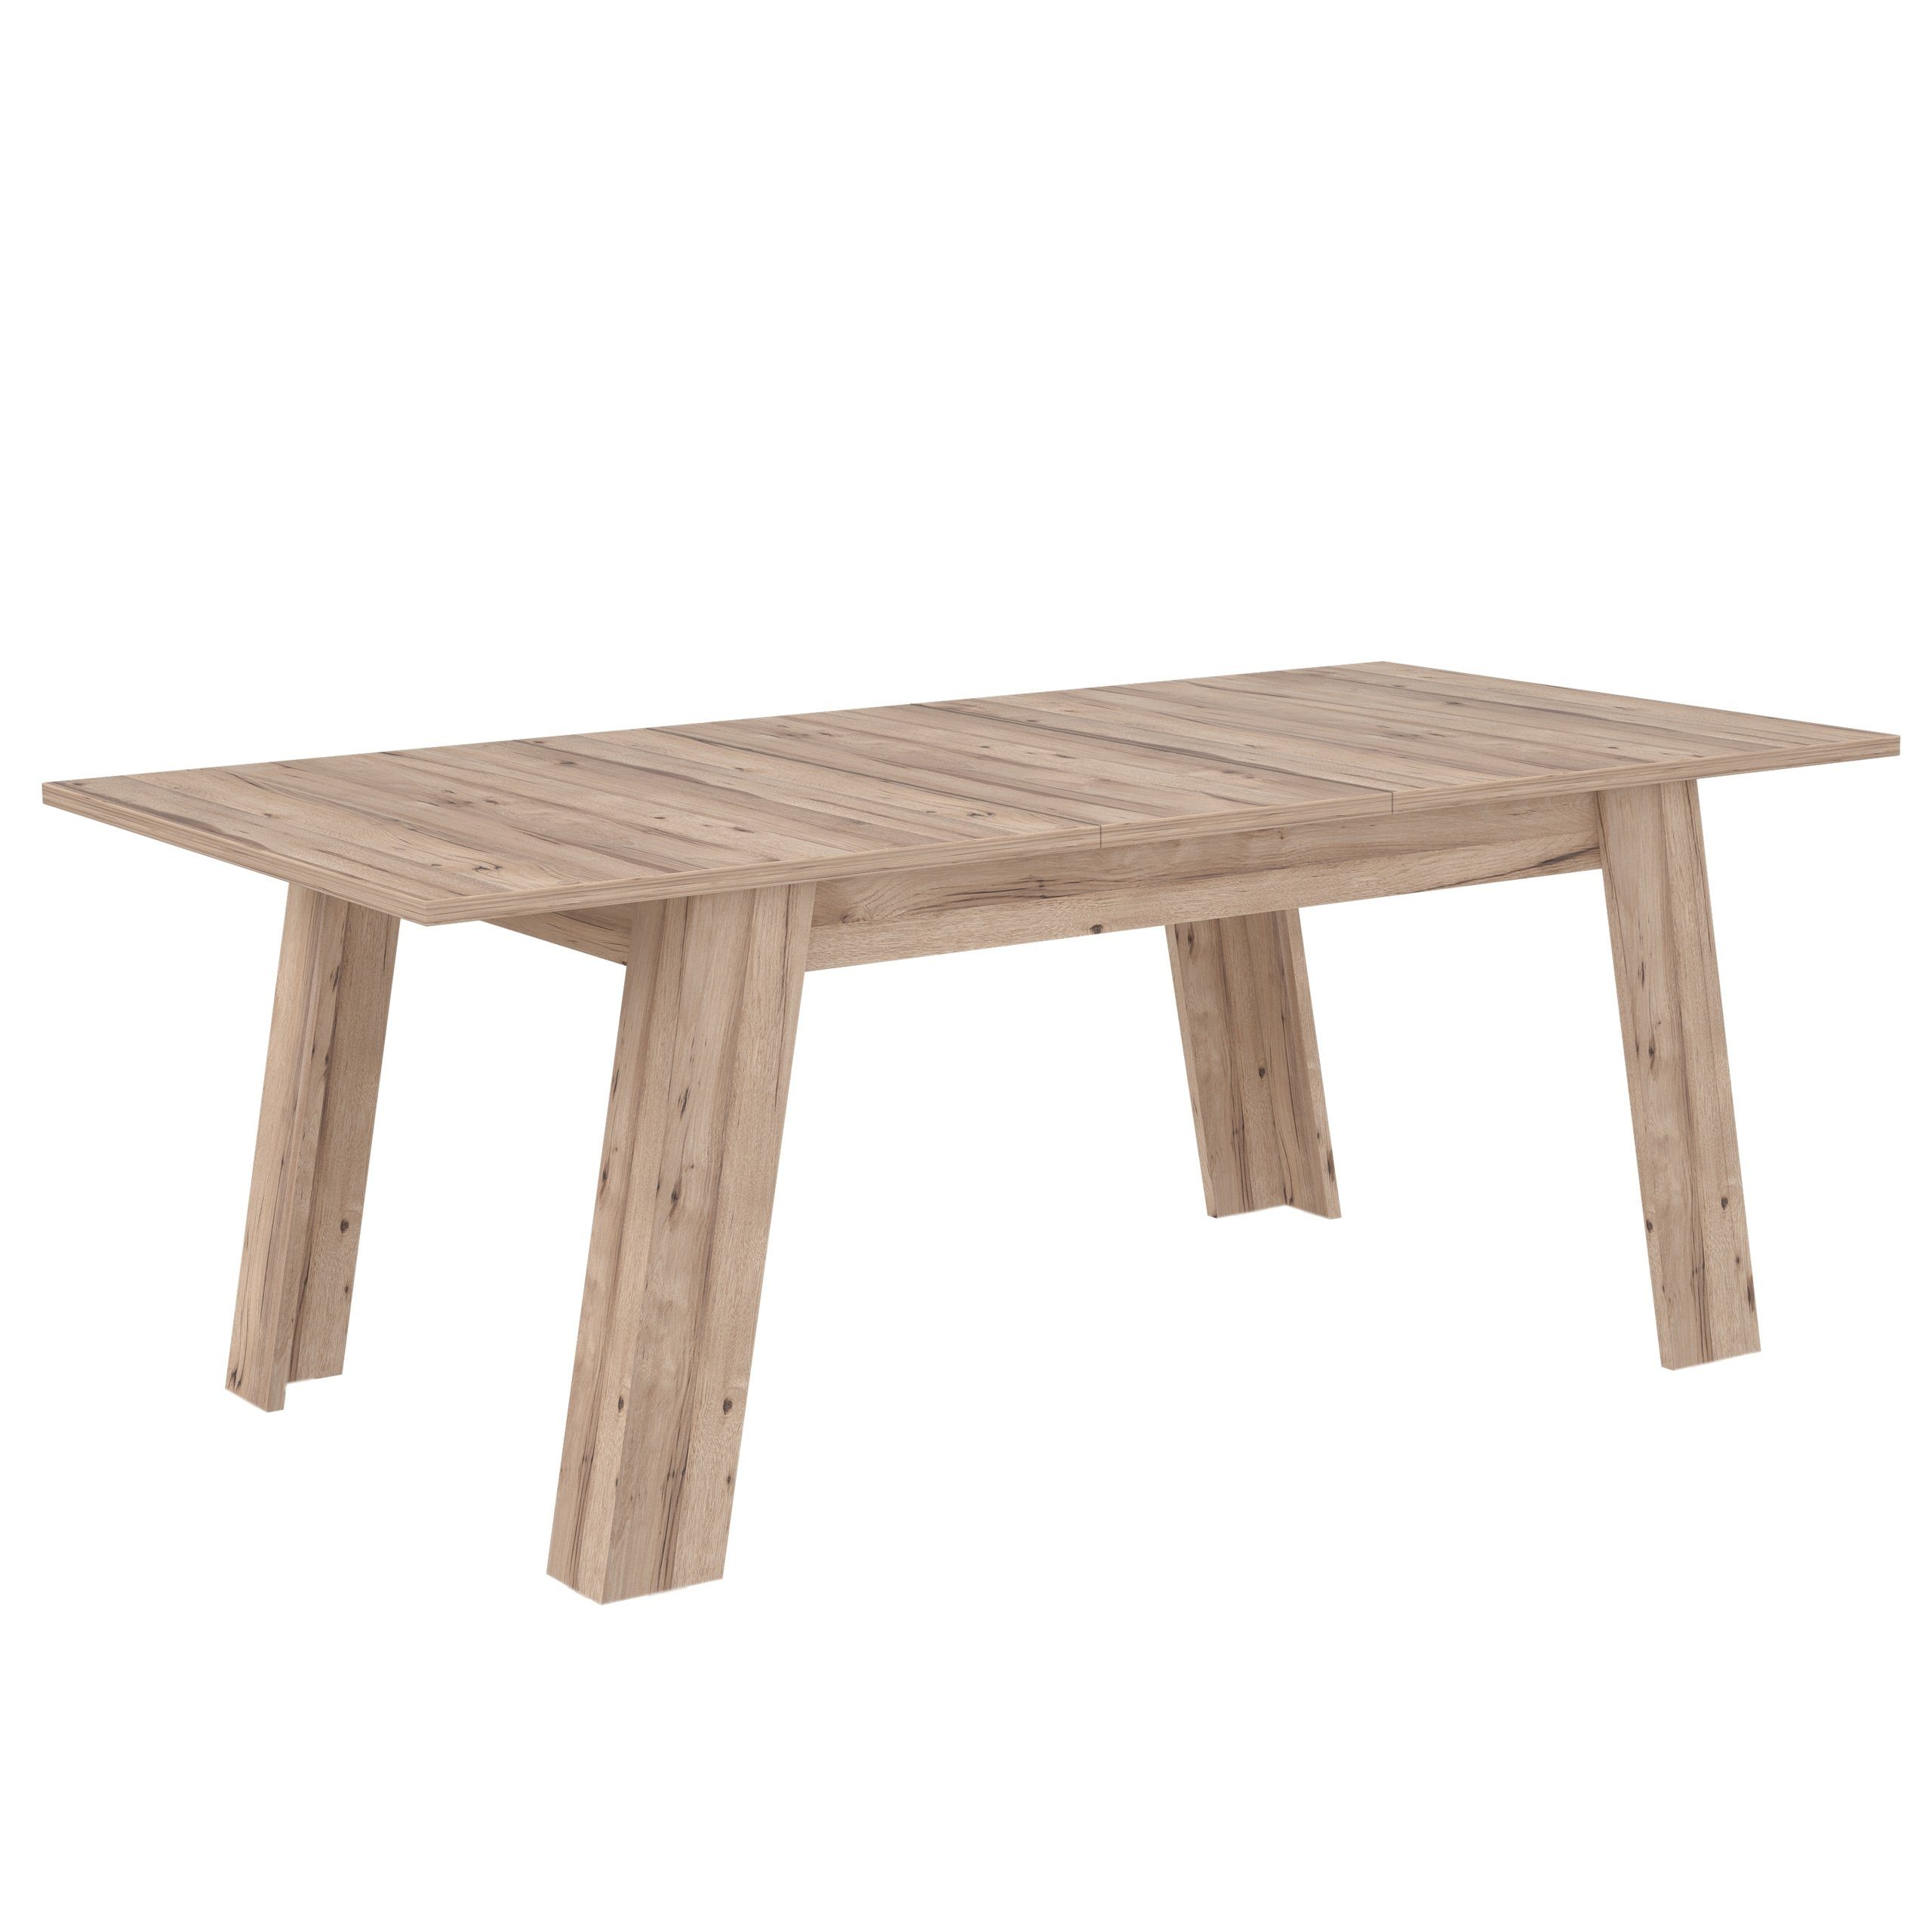 Newroom Esstisch Bonnie, Esstisch Esszimmer Planked Tisch Eiche Modern Skandi Ausziehbar